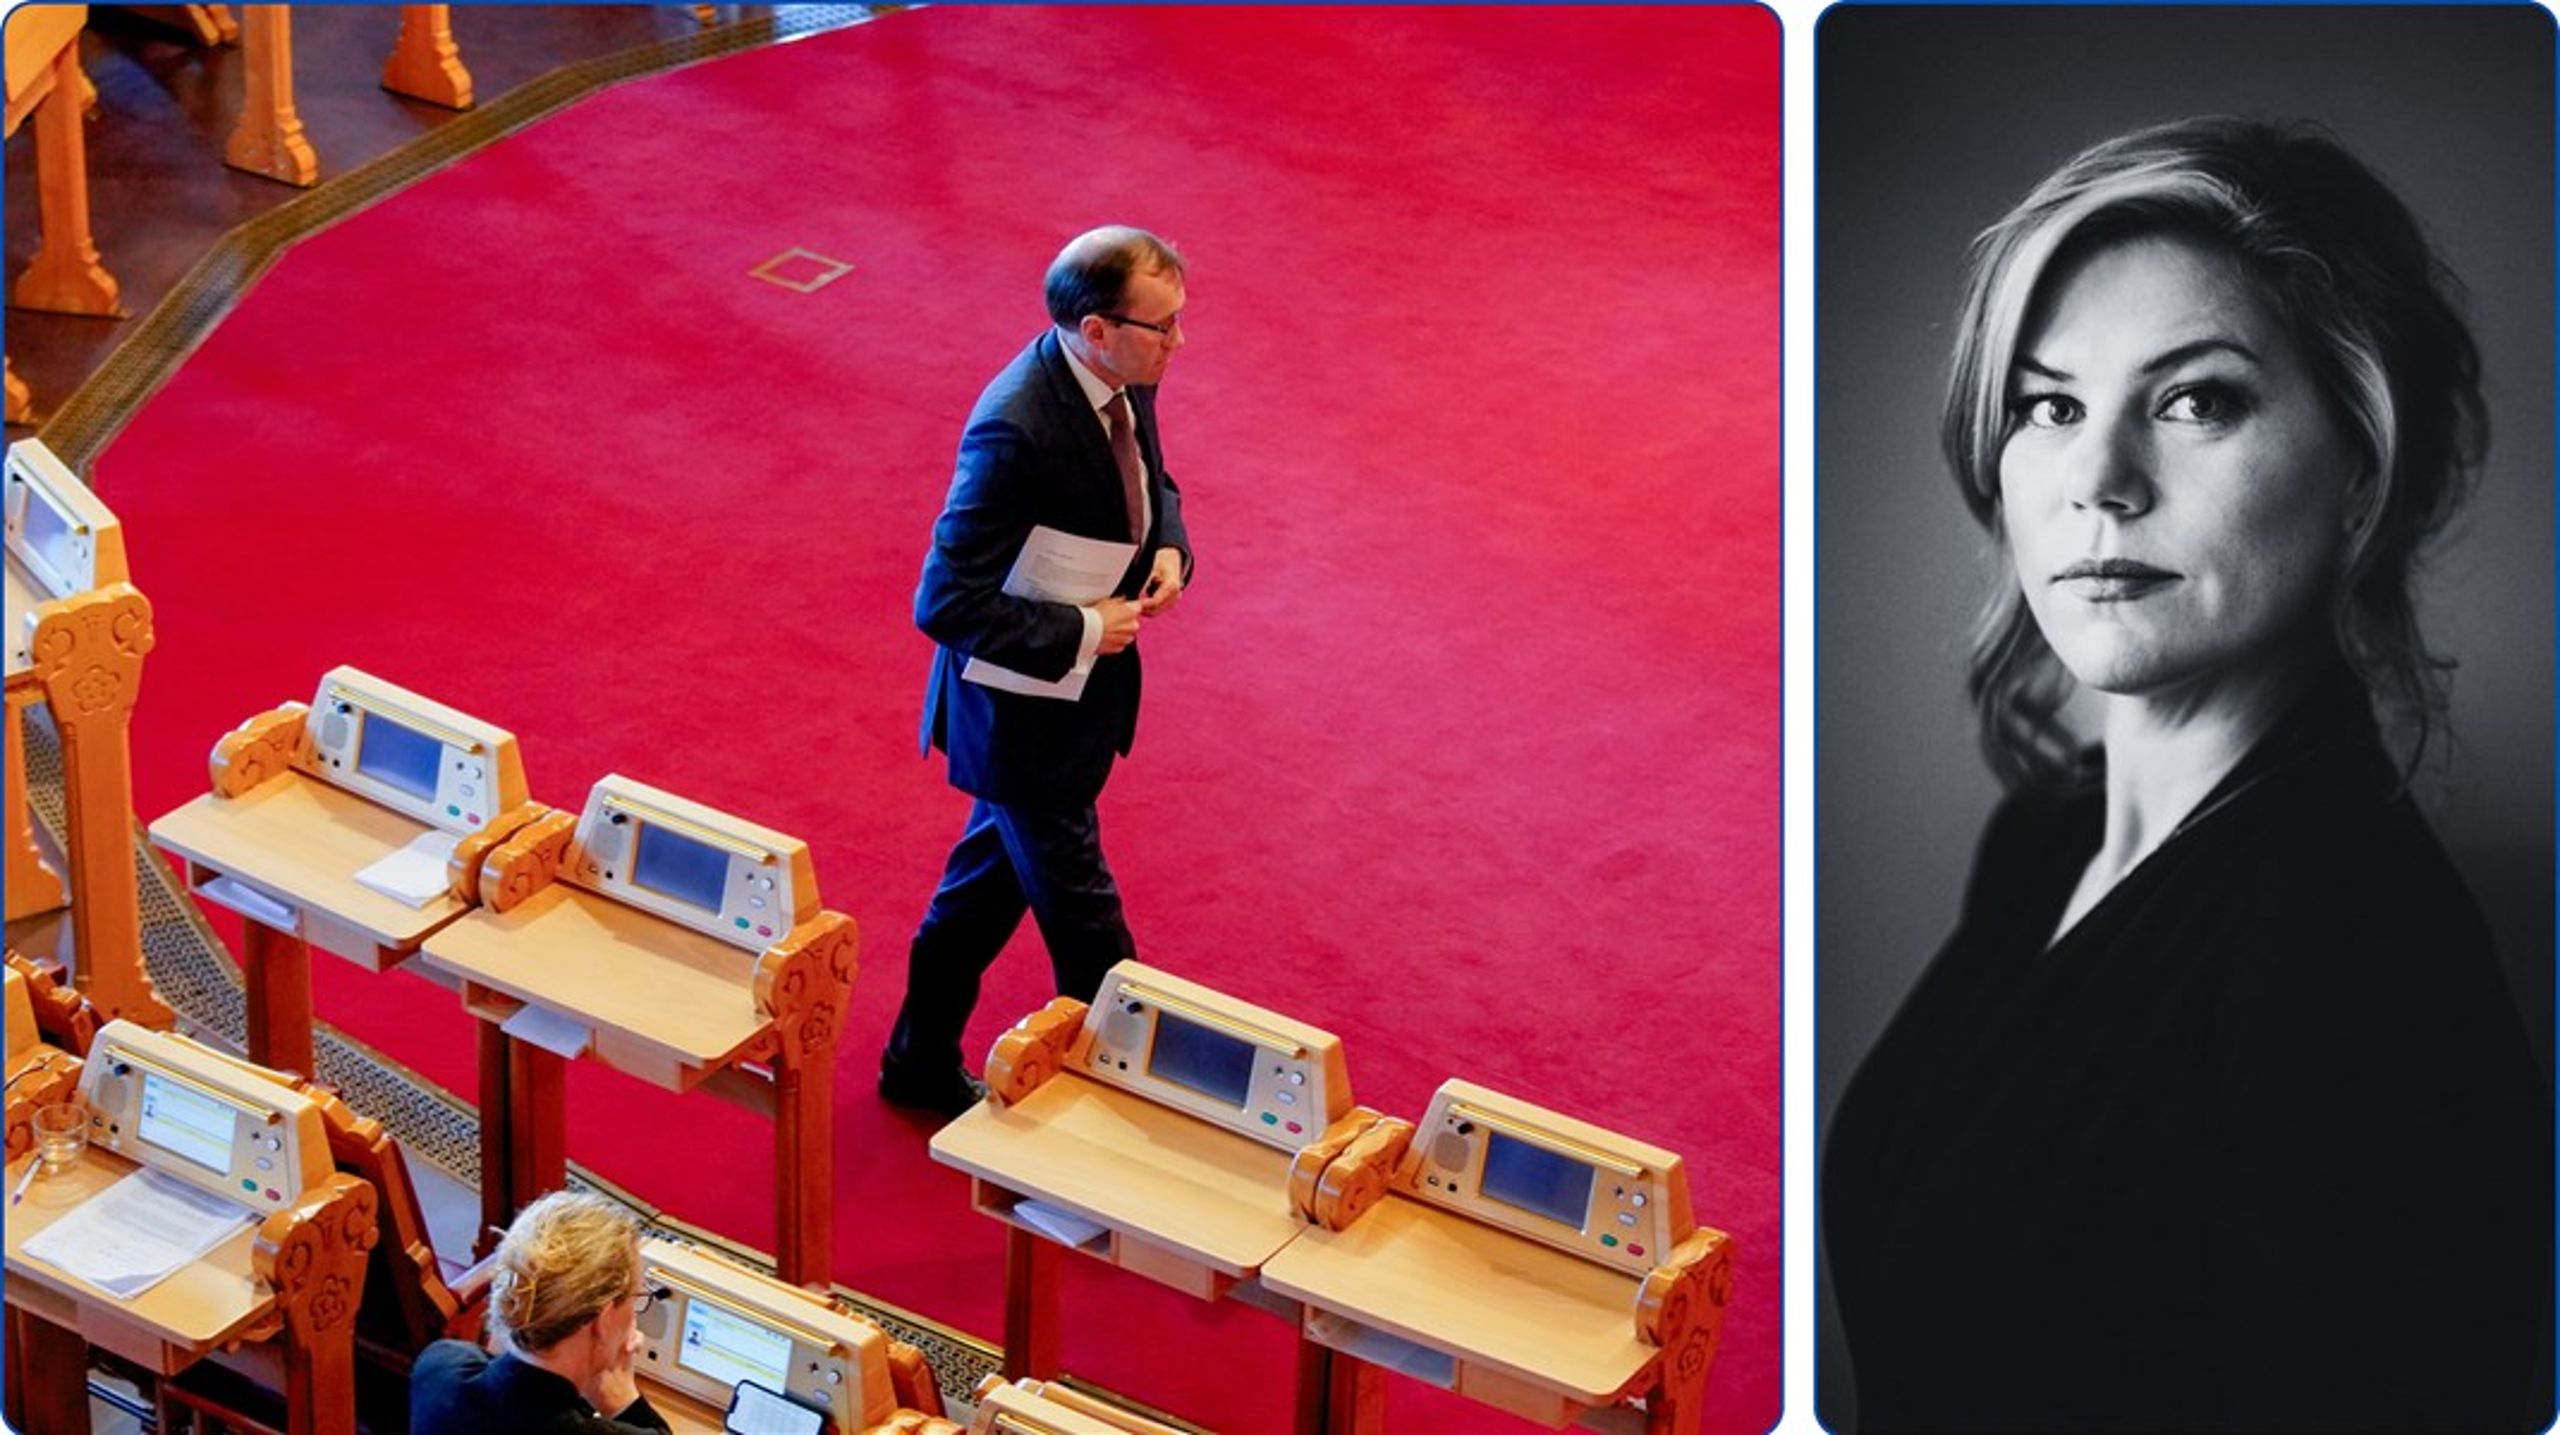 Debatten etter utenriksministerens redegjørelse i Stortinget handler sjelden om hva som ble sagt eller hva som er viktige saker for Norge, men&nbsp;om partiene selv og deres markeringsbehov i enkeltsaker, skriver Jette F. Christensen, EU-analytiker i Altinget.